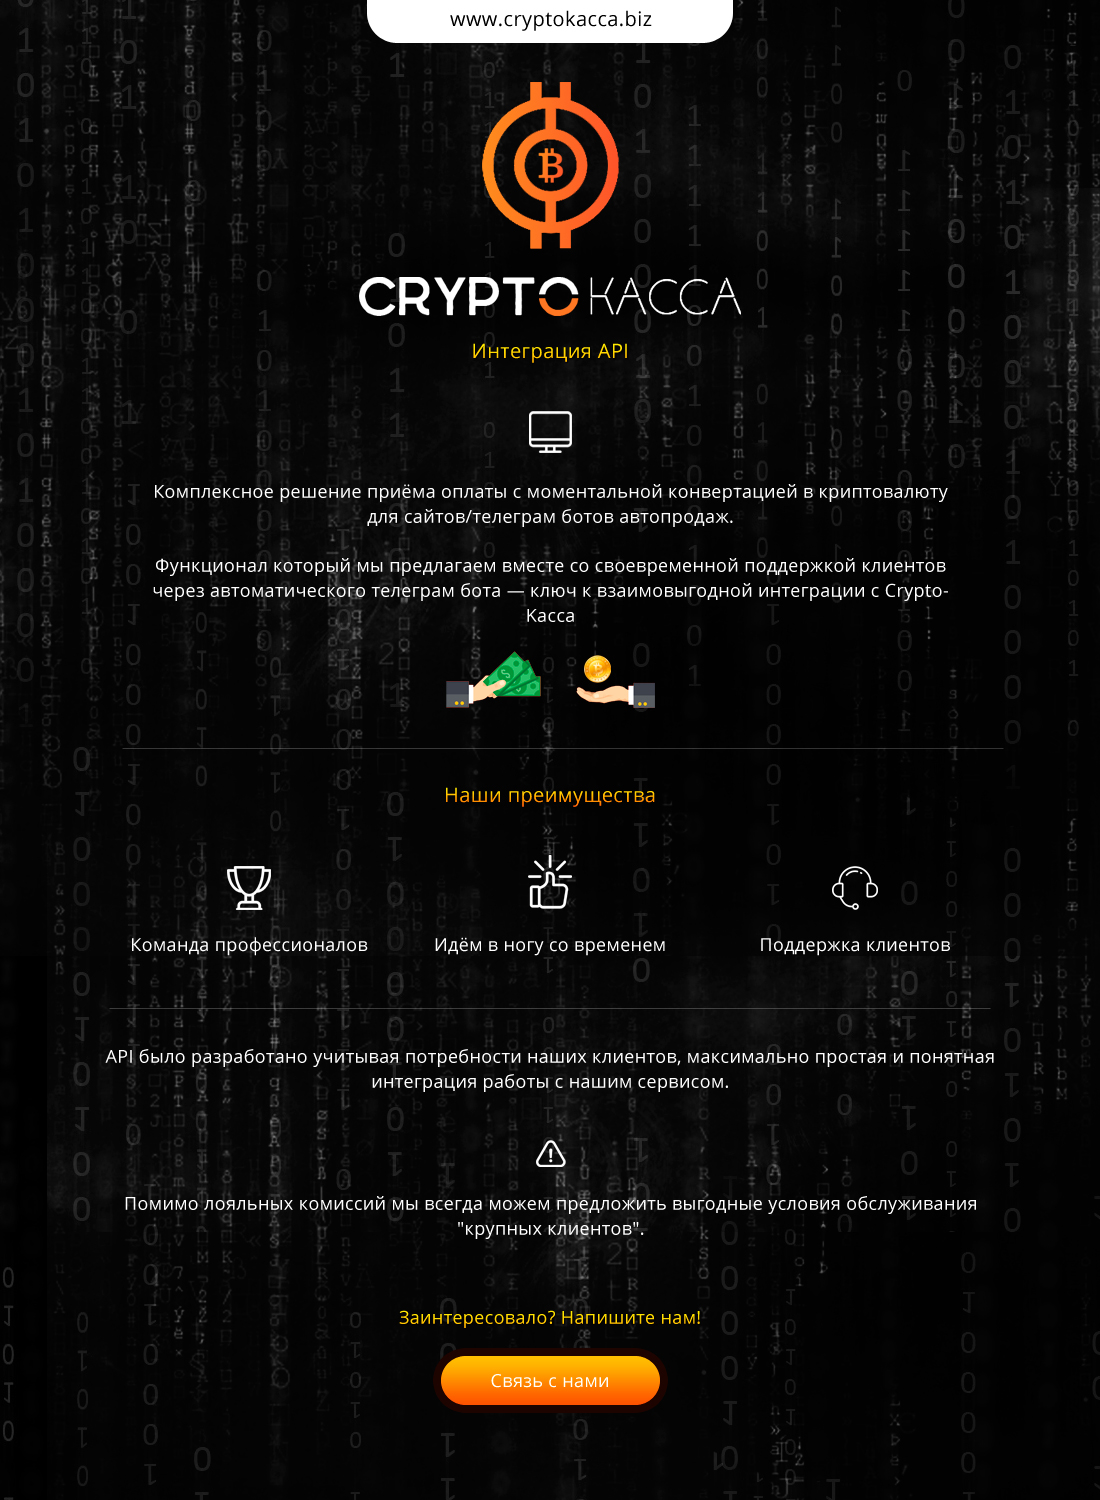 Crypto-Kacca.jpg